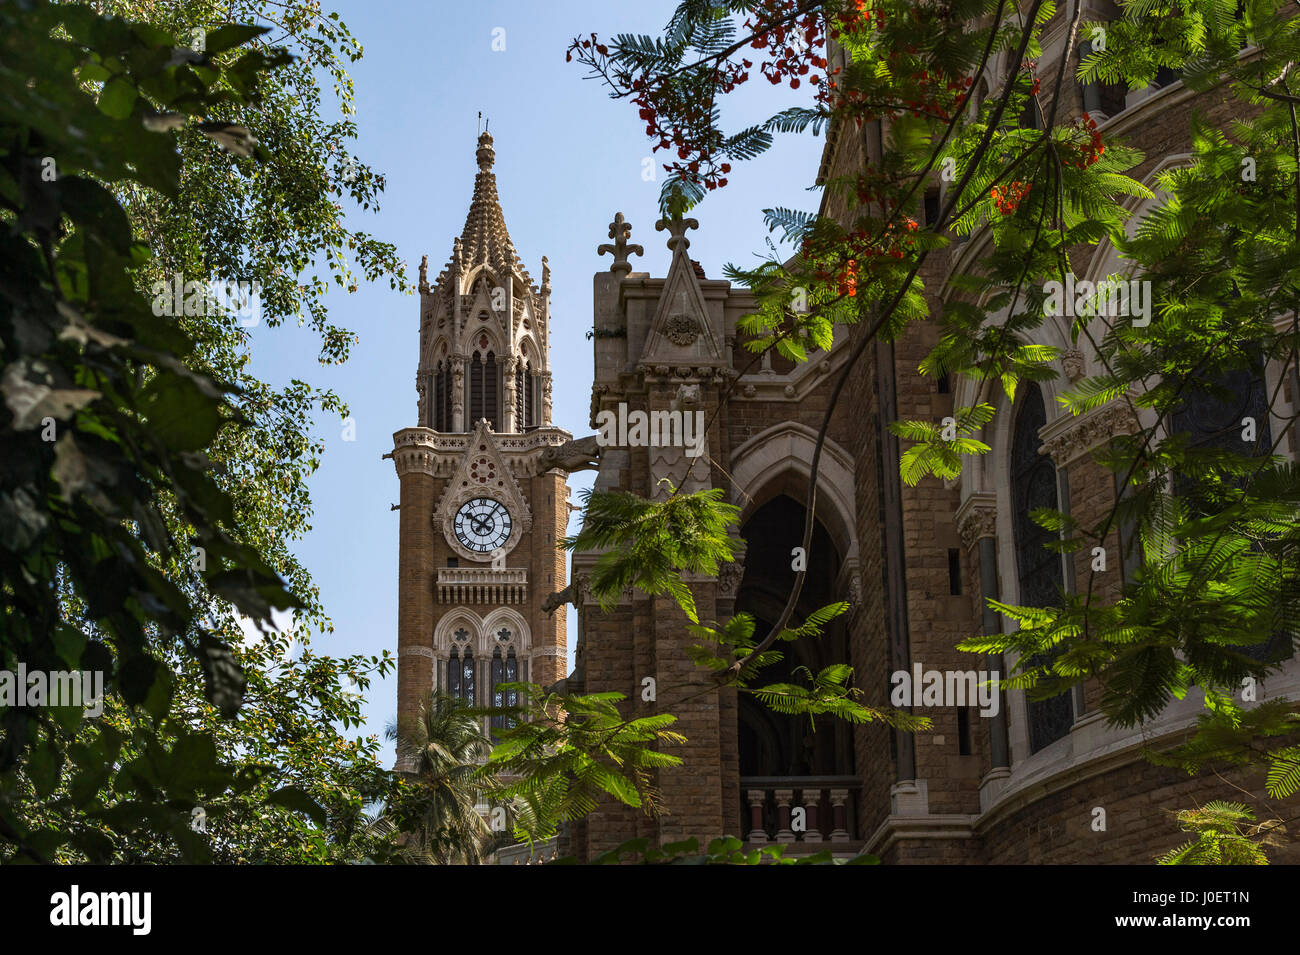 Rajabai clock tower, Bombay University convocation hall, mumbai, maharashtra, india, asia Stock Photo